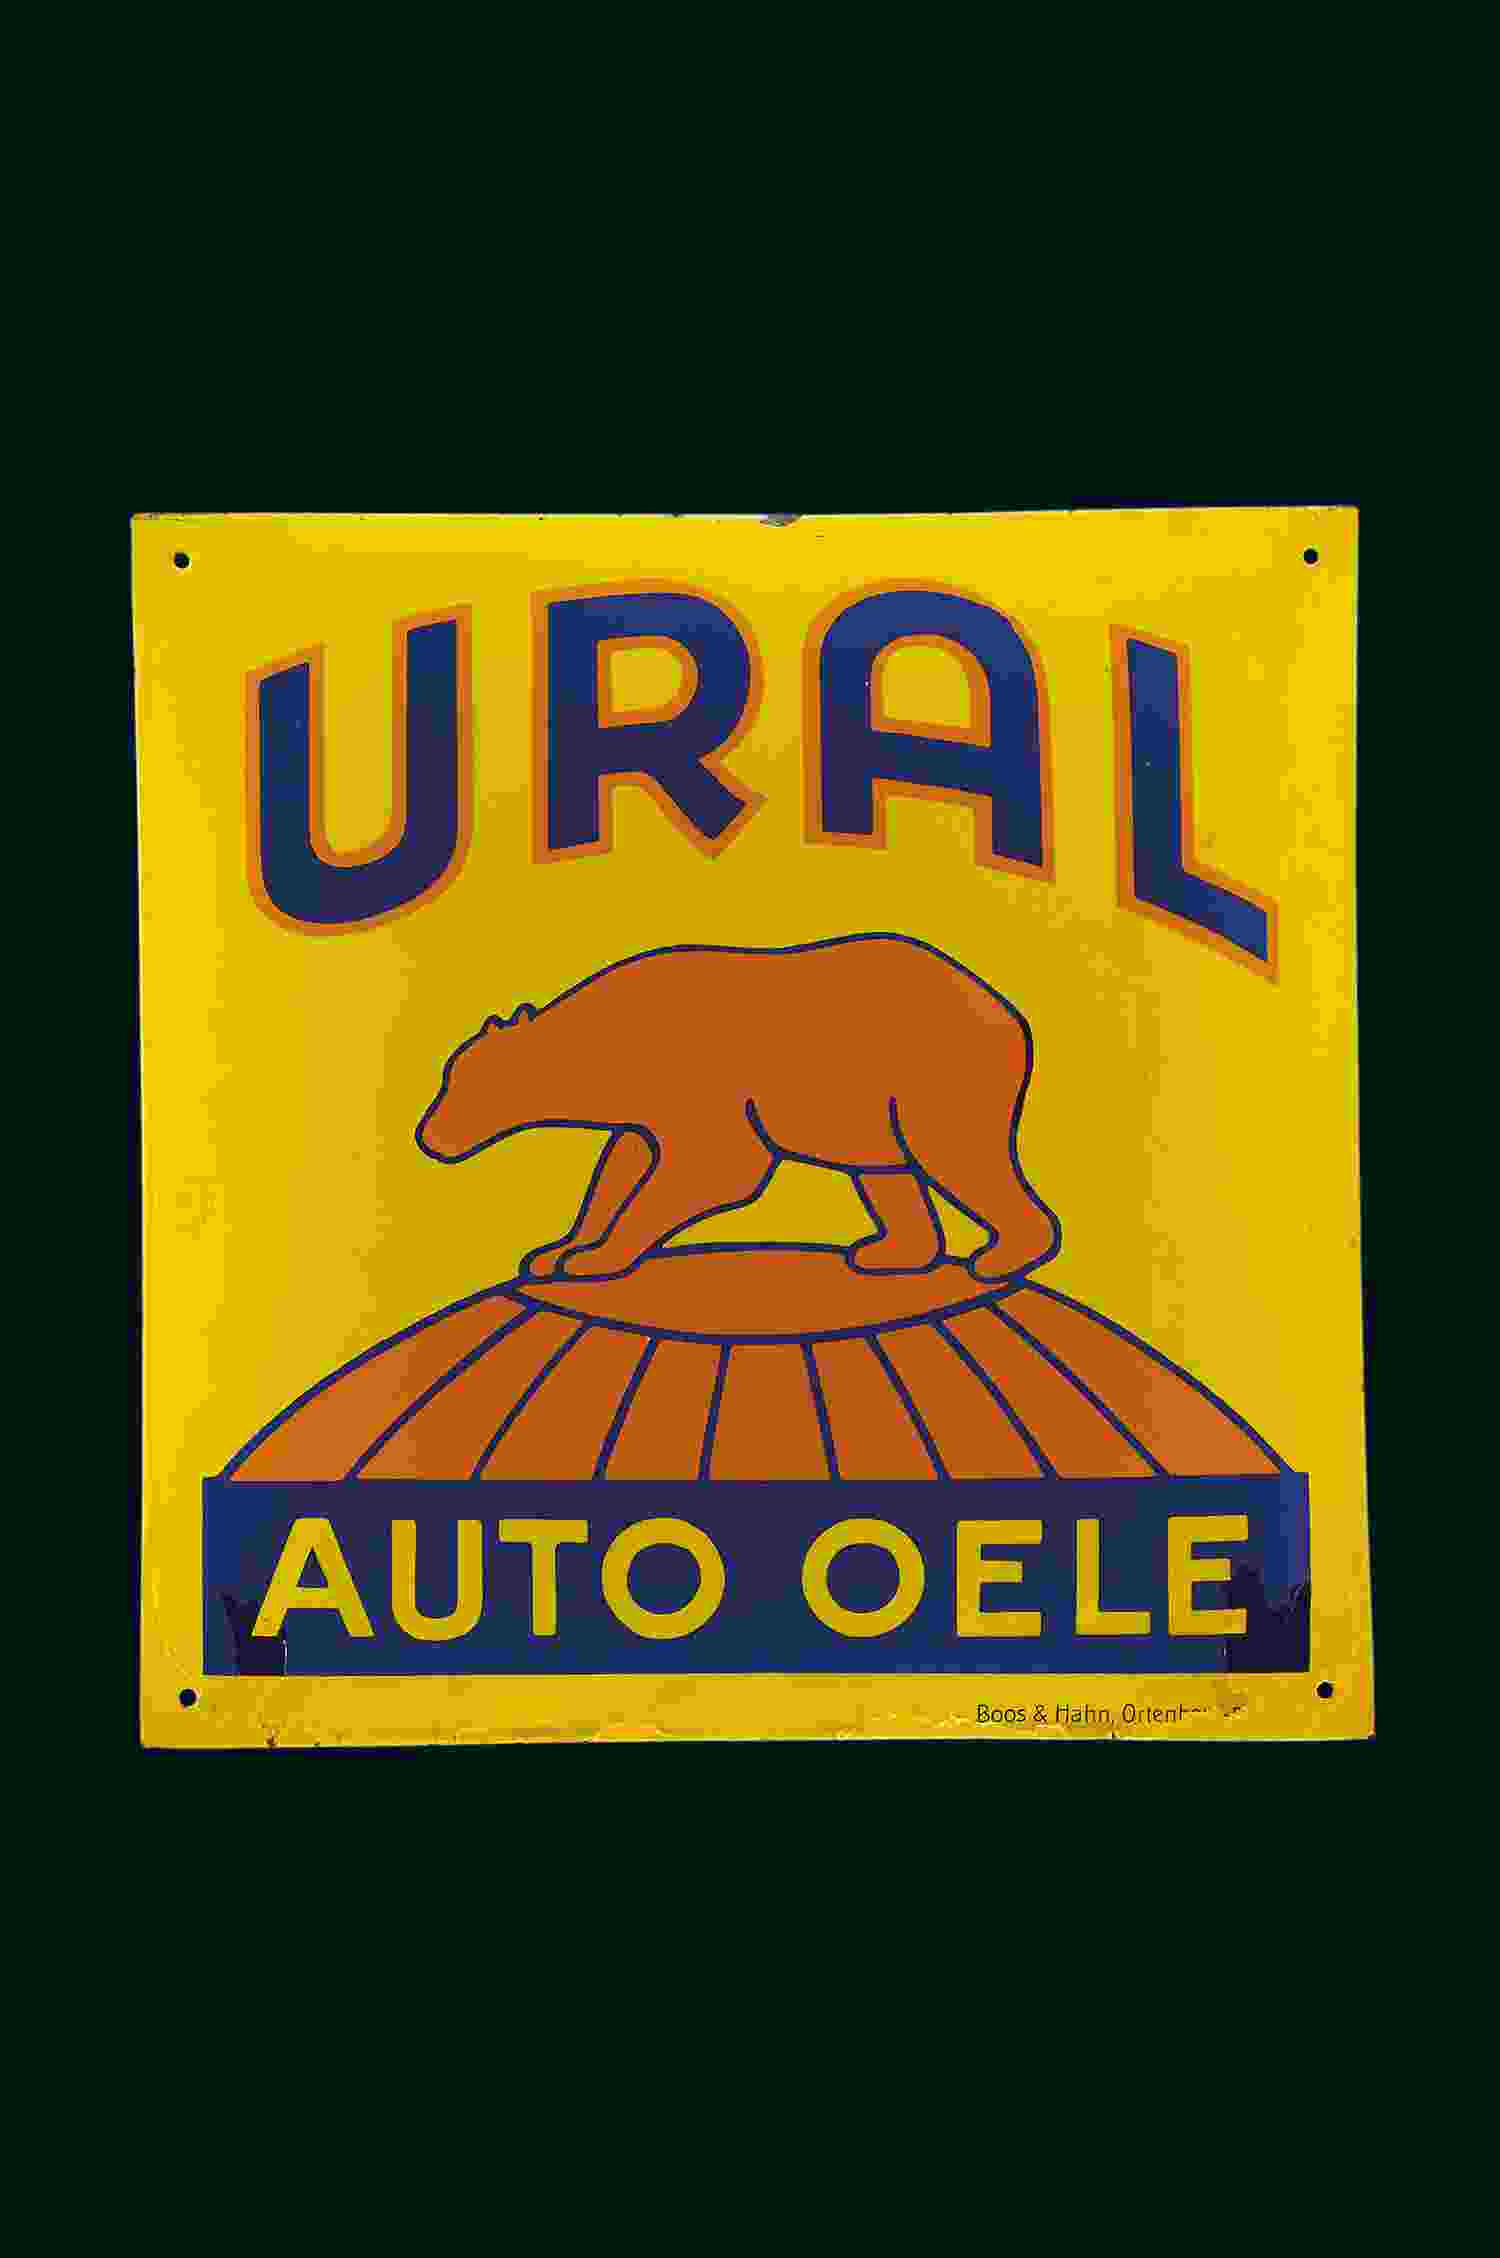 Ural Auto Oele  